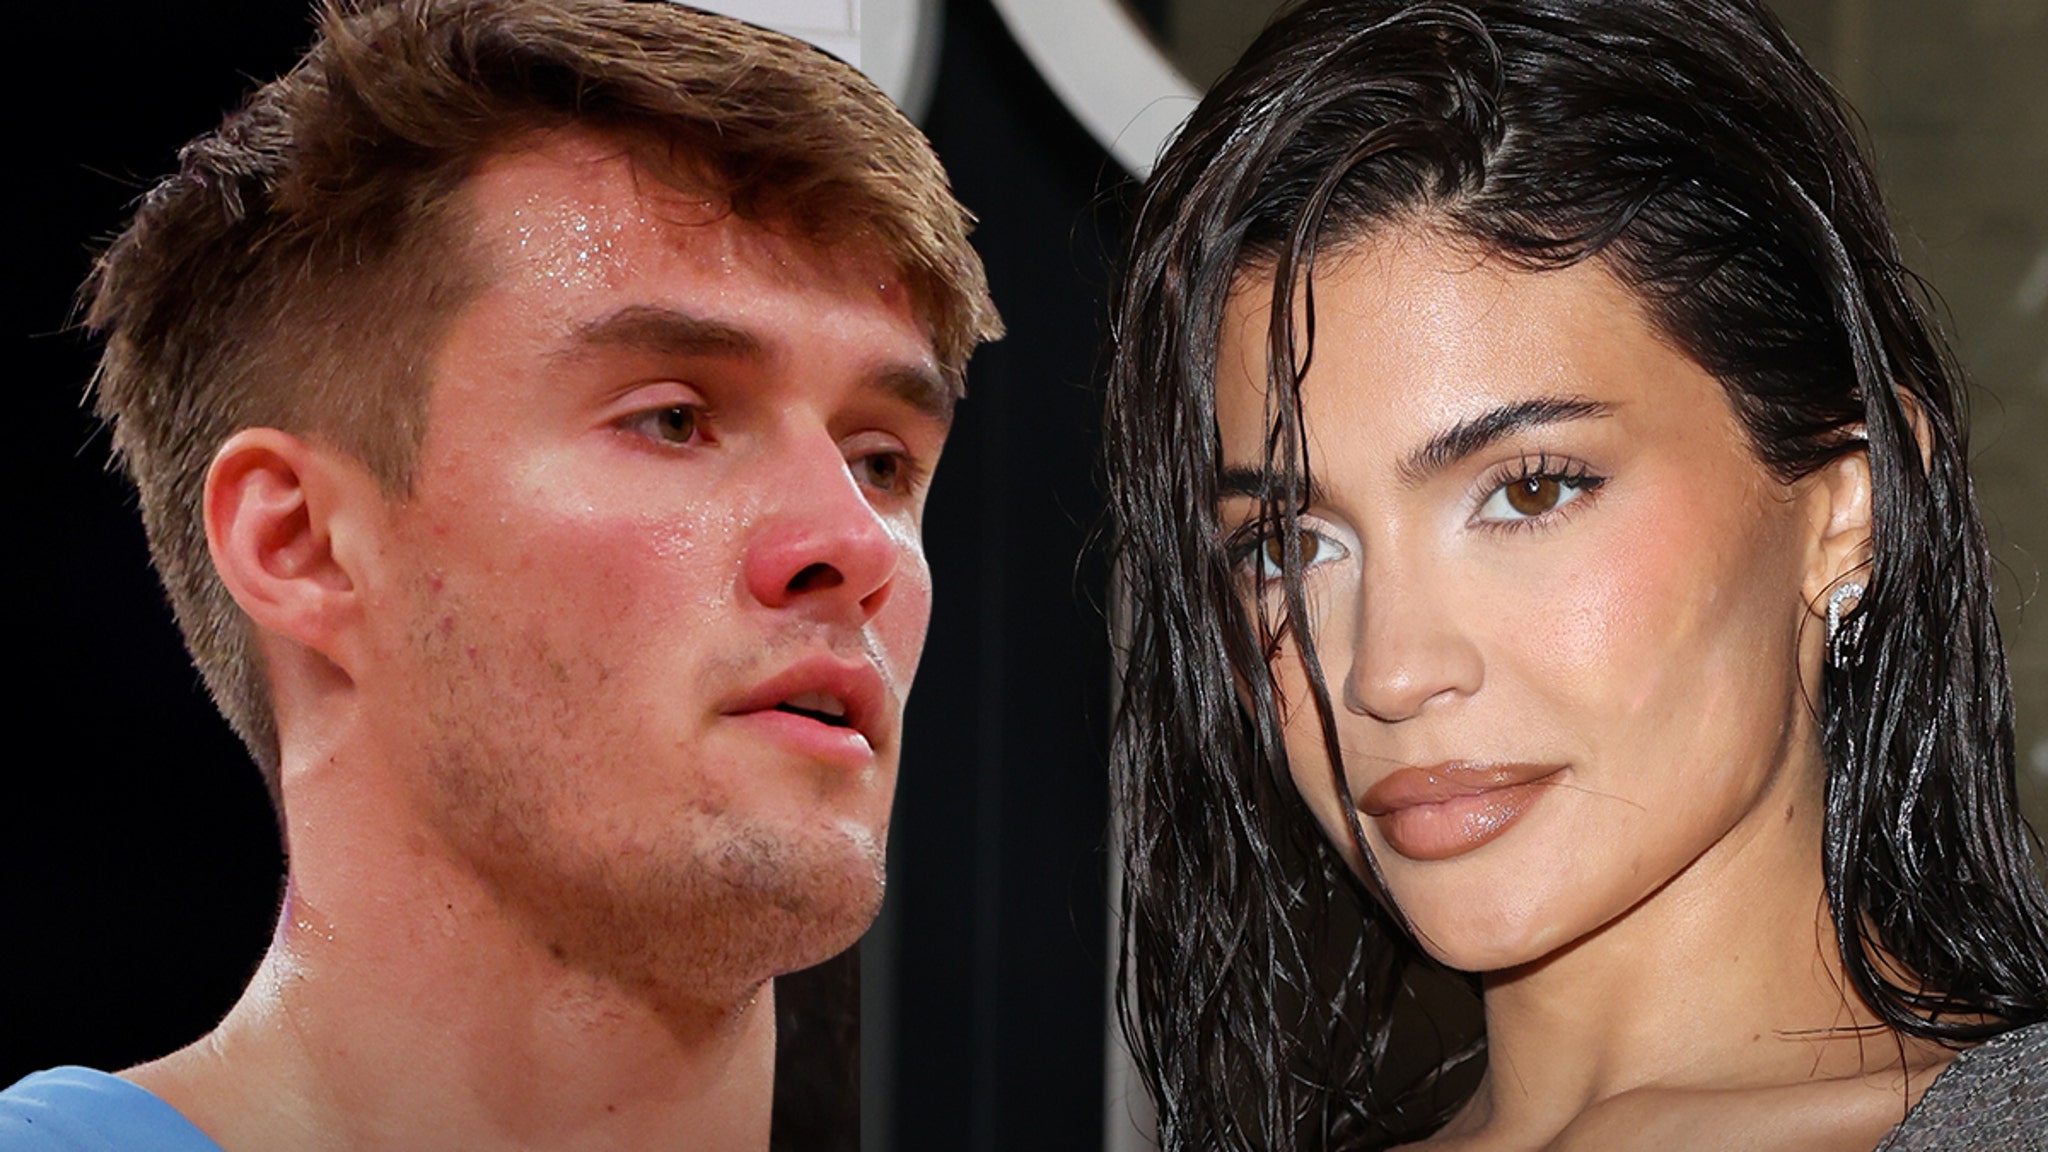 O jogador de basquete da UNC comenta os rumores de namoro de Kylie Jenner, mas ele está completo